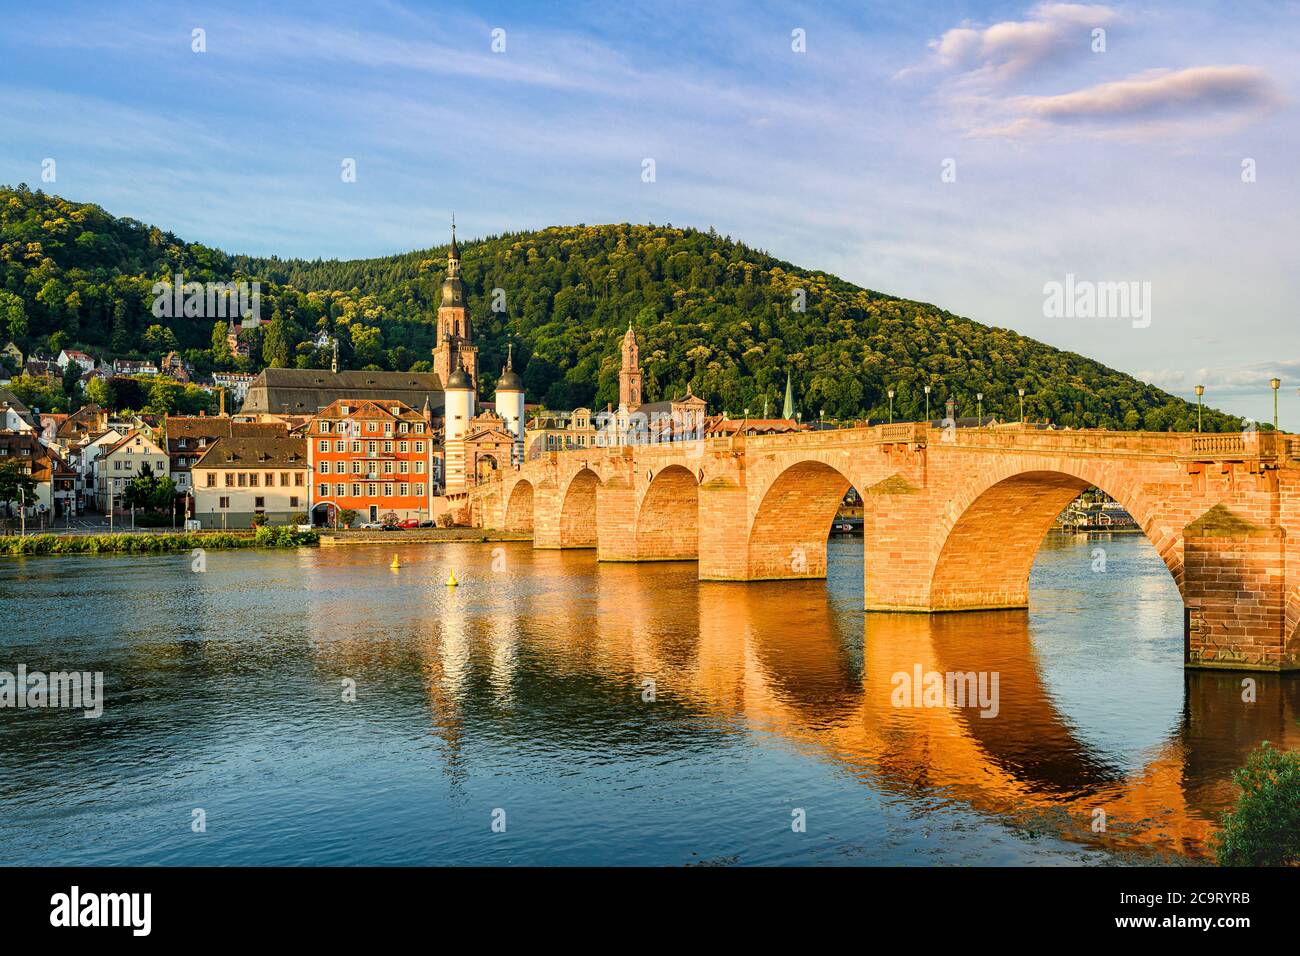 The old bridge over Neckar river in Heidelberg, Germany Stock Photo